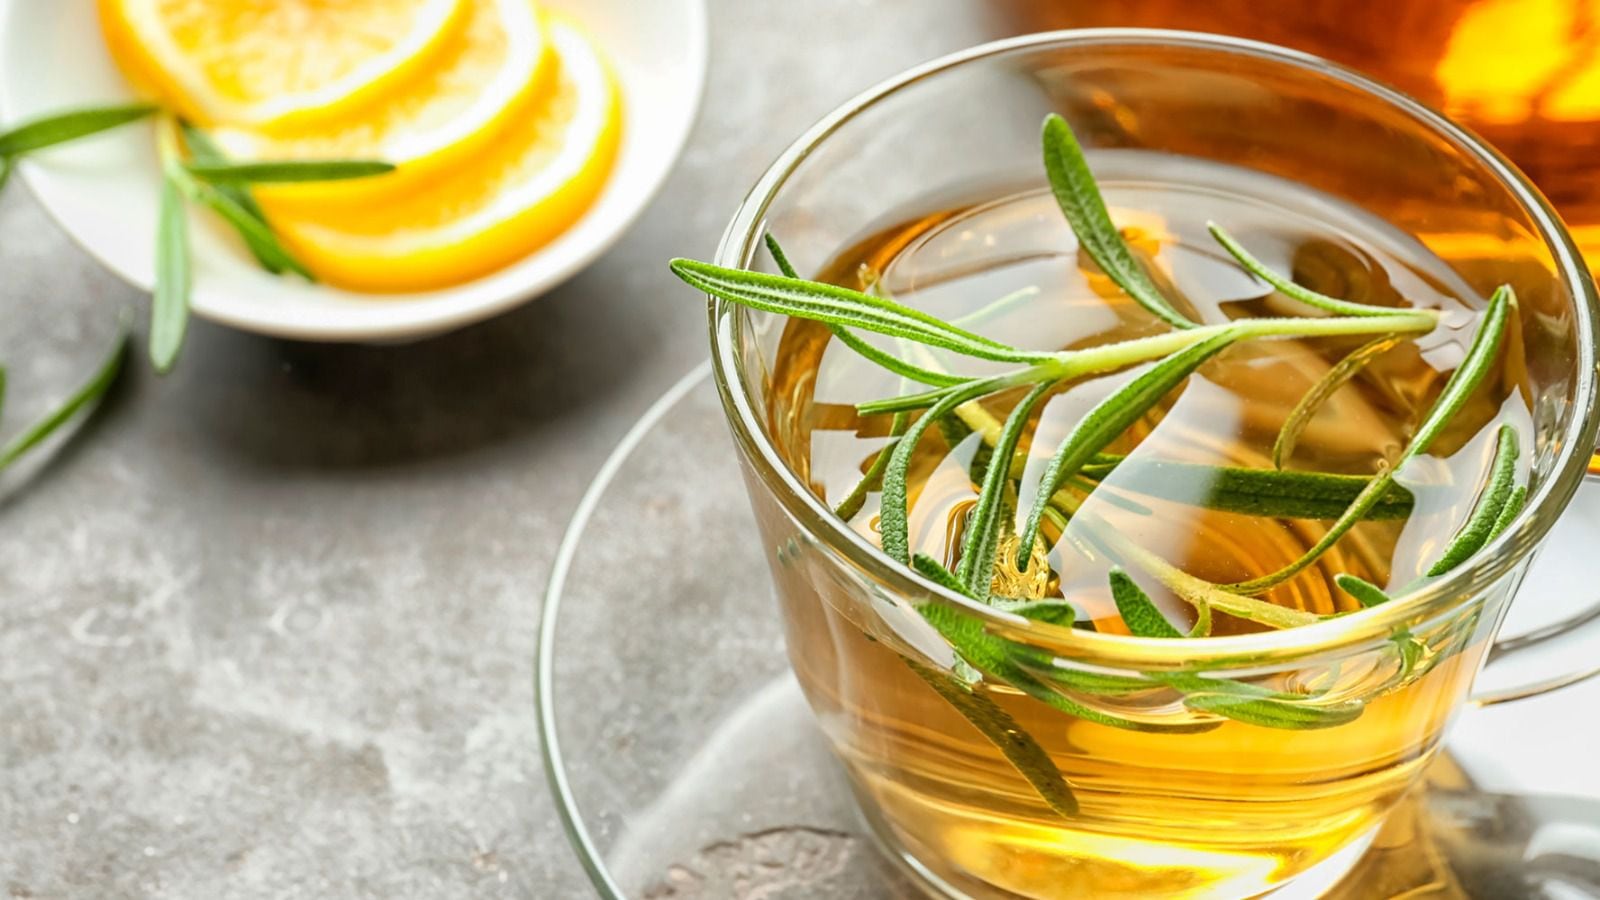 En ocasiones, el té de romero se combina con otros ingredientes como el limón. (Foto: Shutterstock)